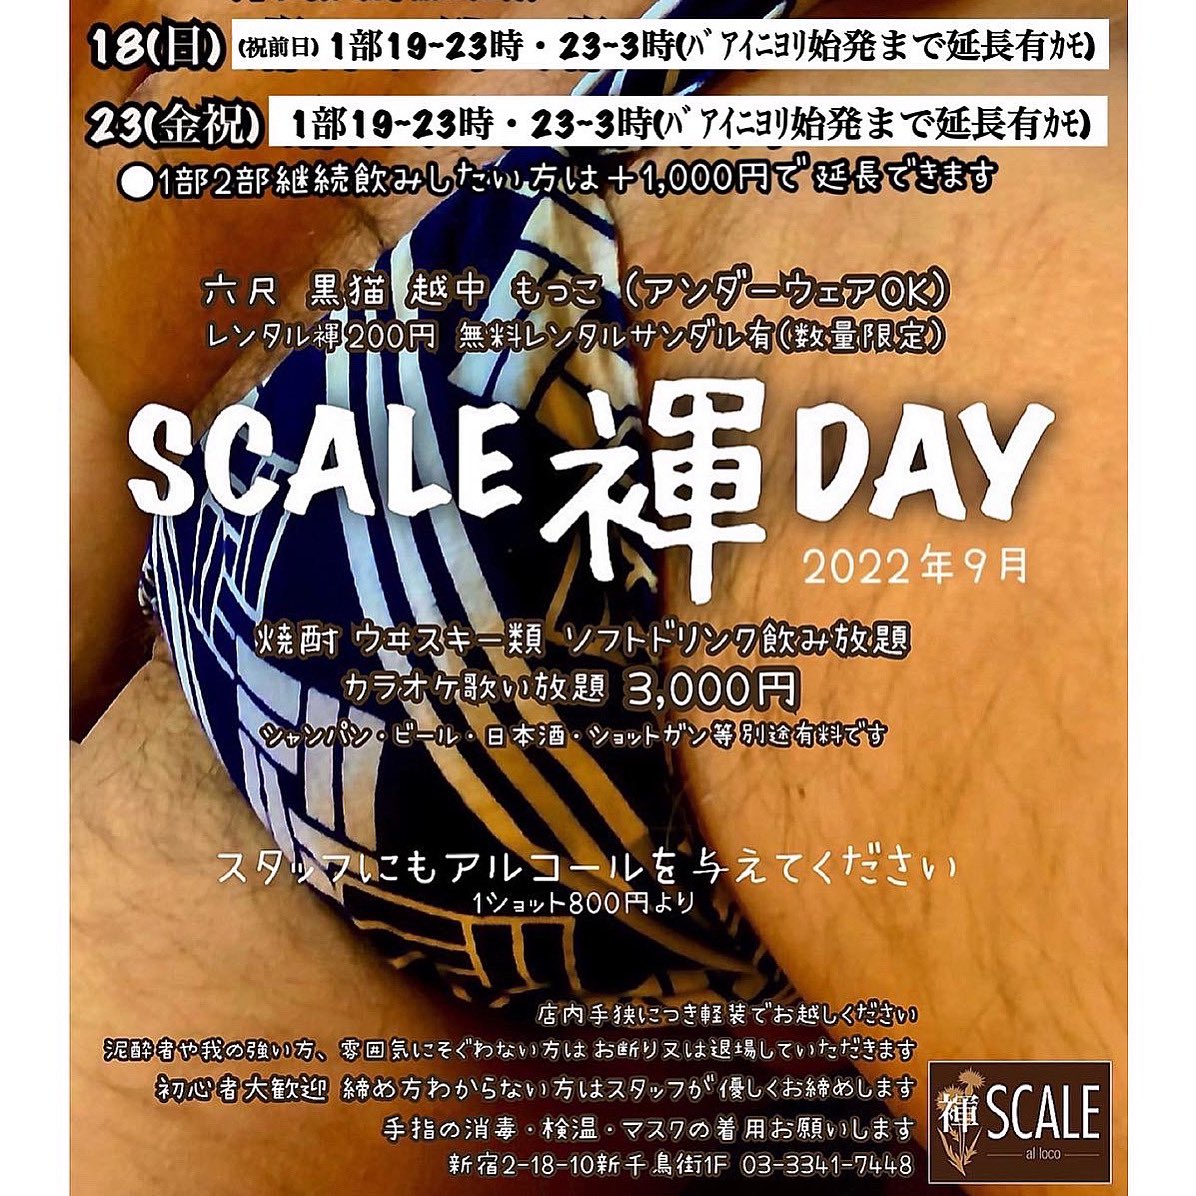 SCALE褌DAY